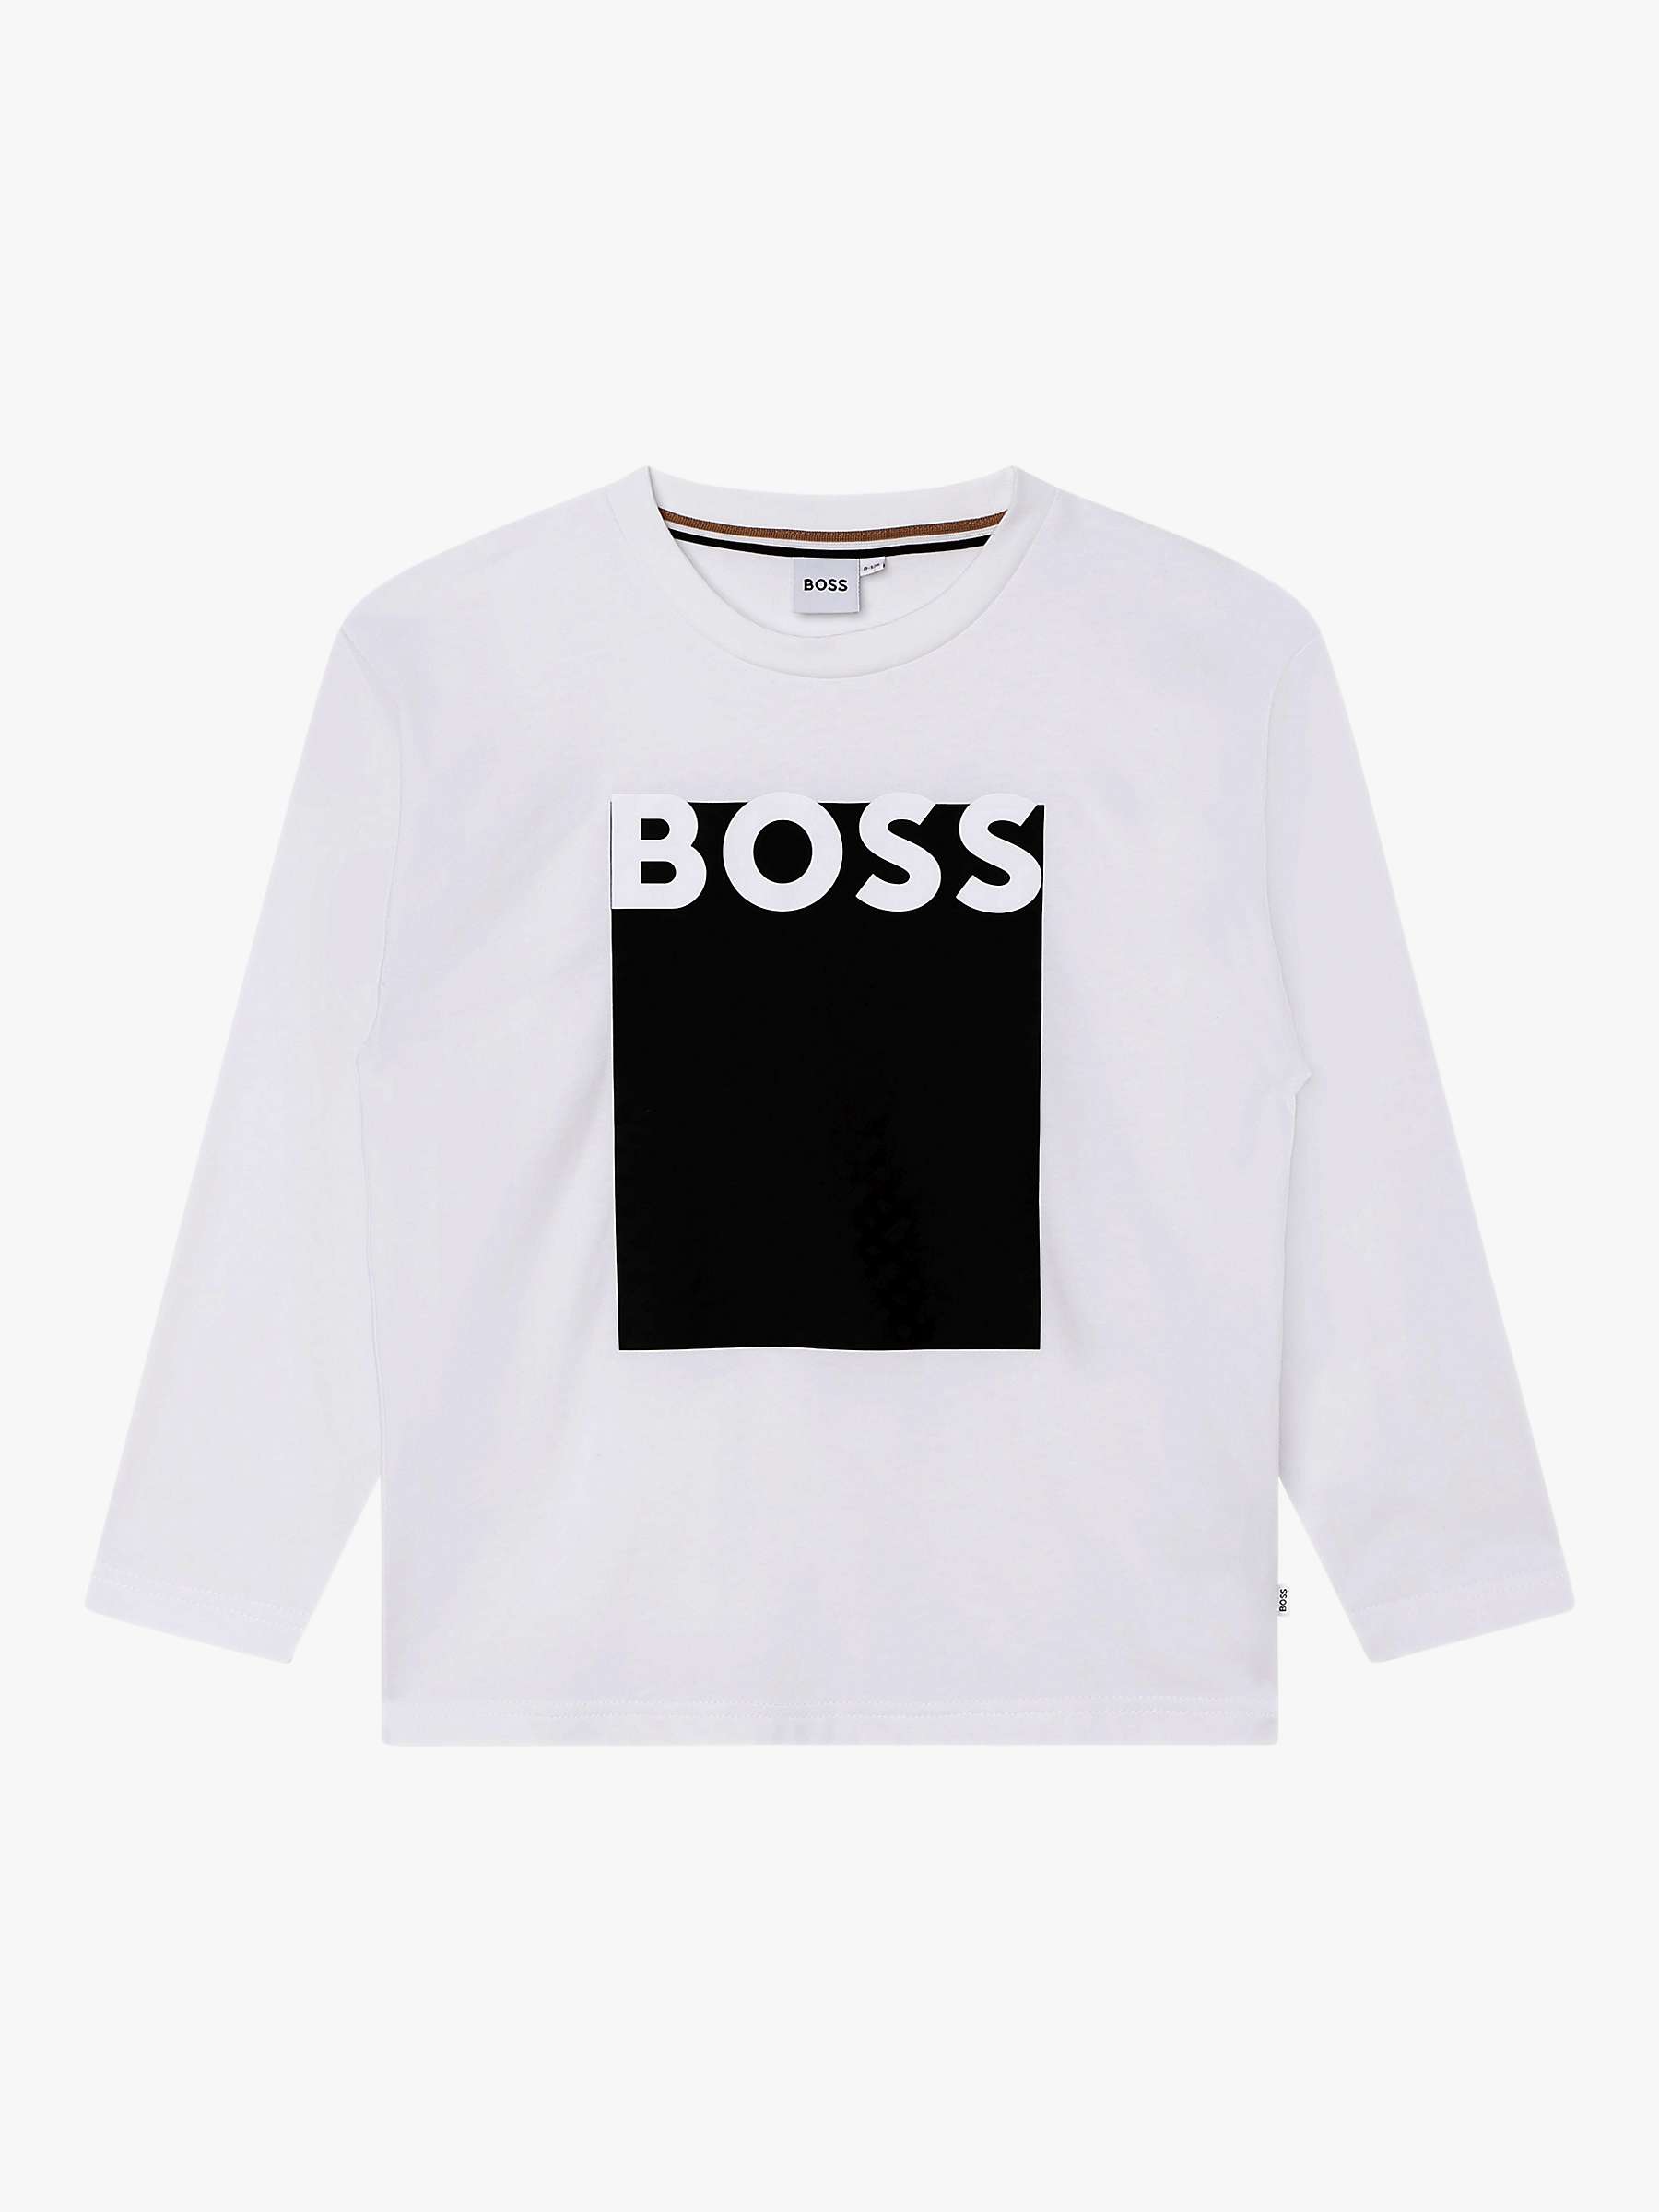 Buy BOSS Kids' Logo Long Sleeve T-Shirt, White Online at johnlewis.com